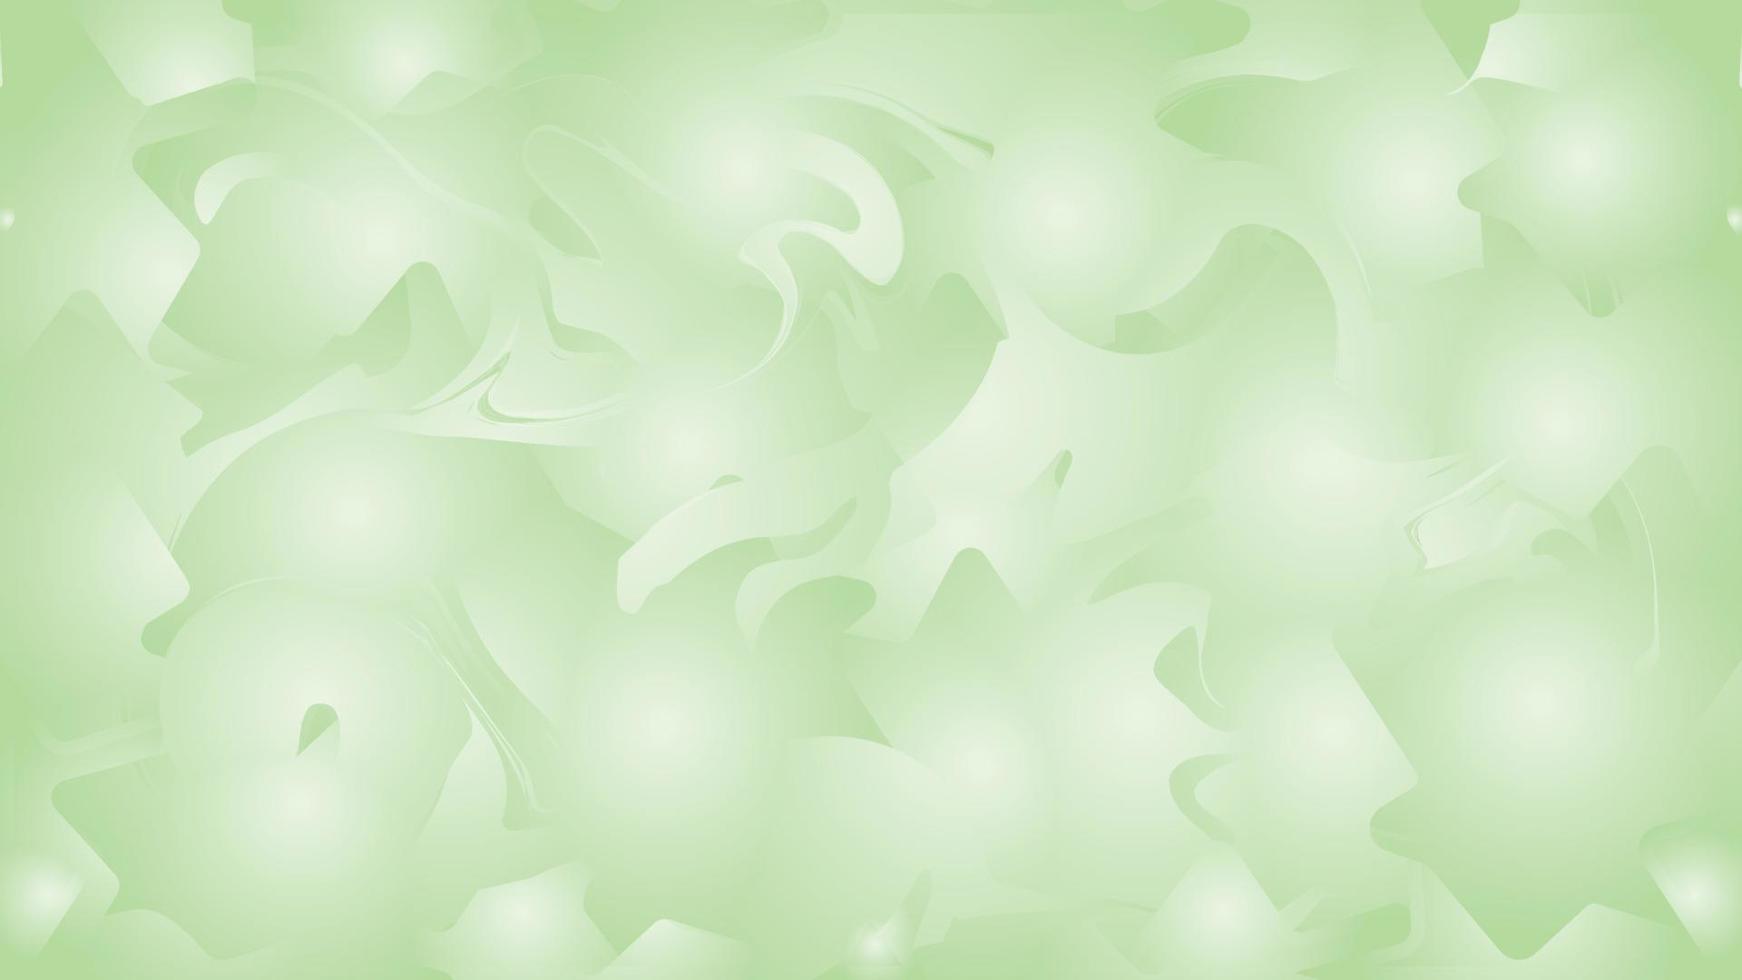 abstrakt ljus grön vattenfärg bakgrund, ljus grön mjuk textur lutning bakgrund vektor